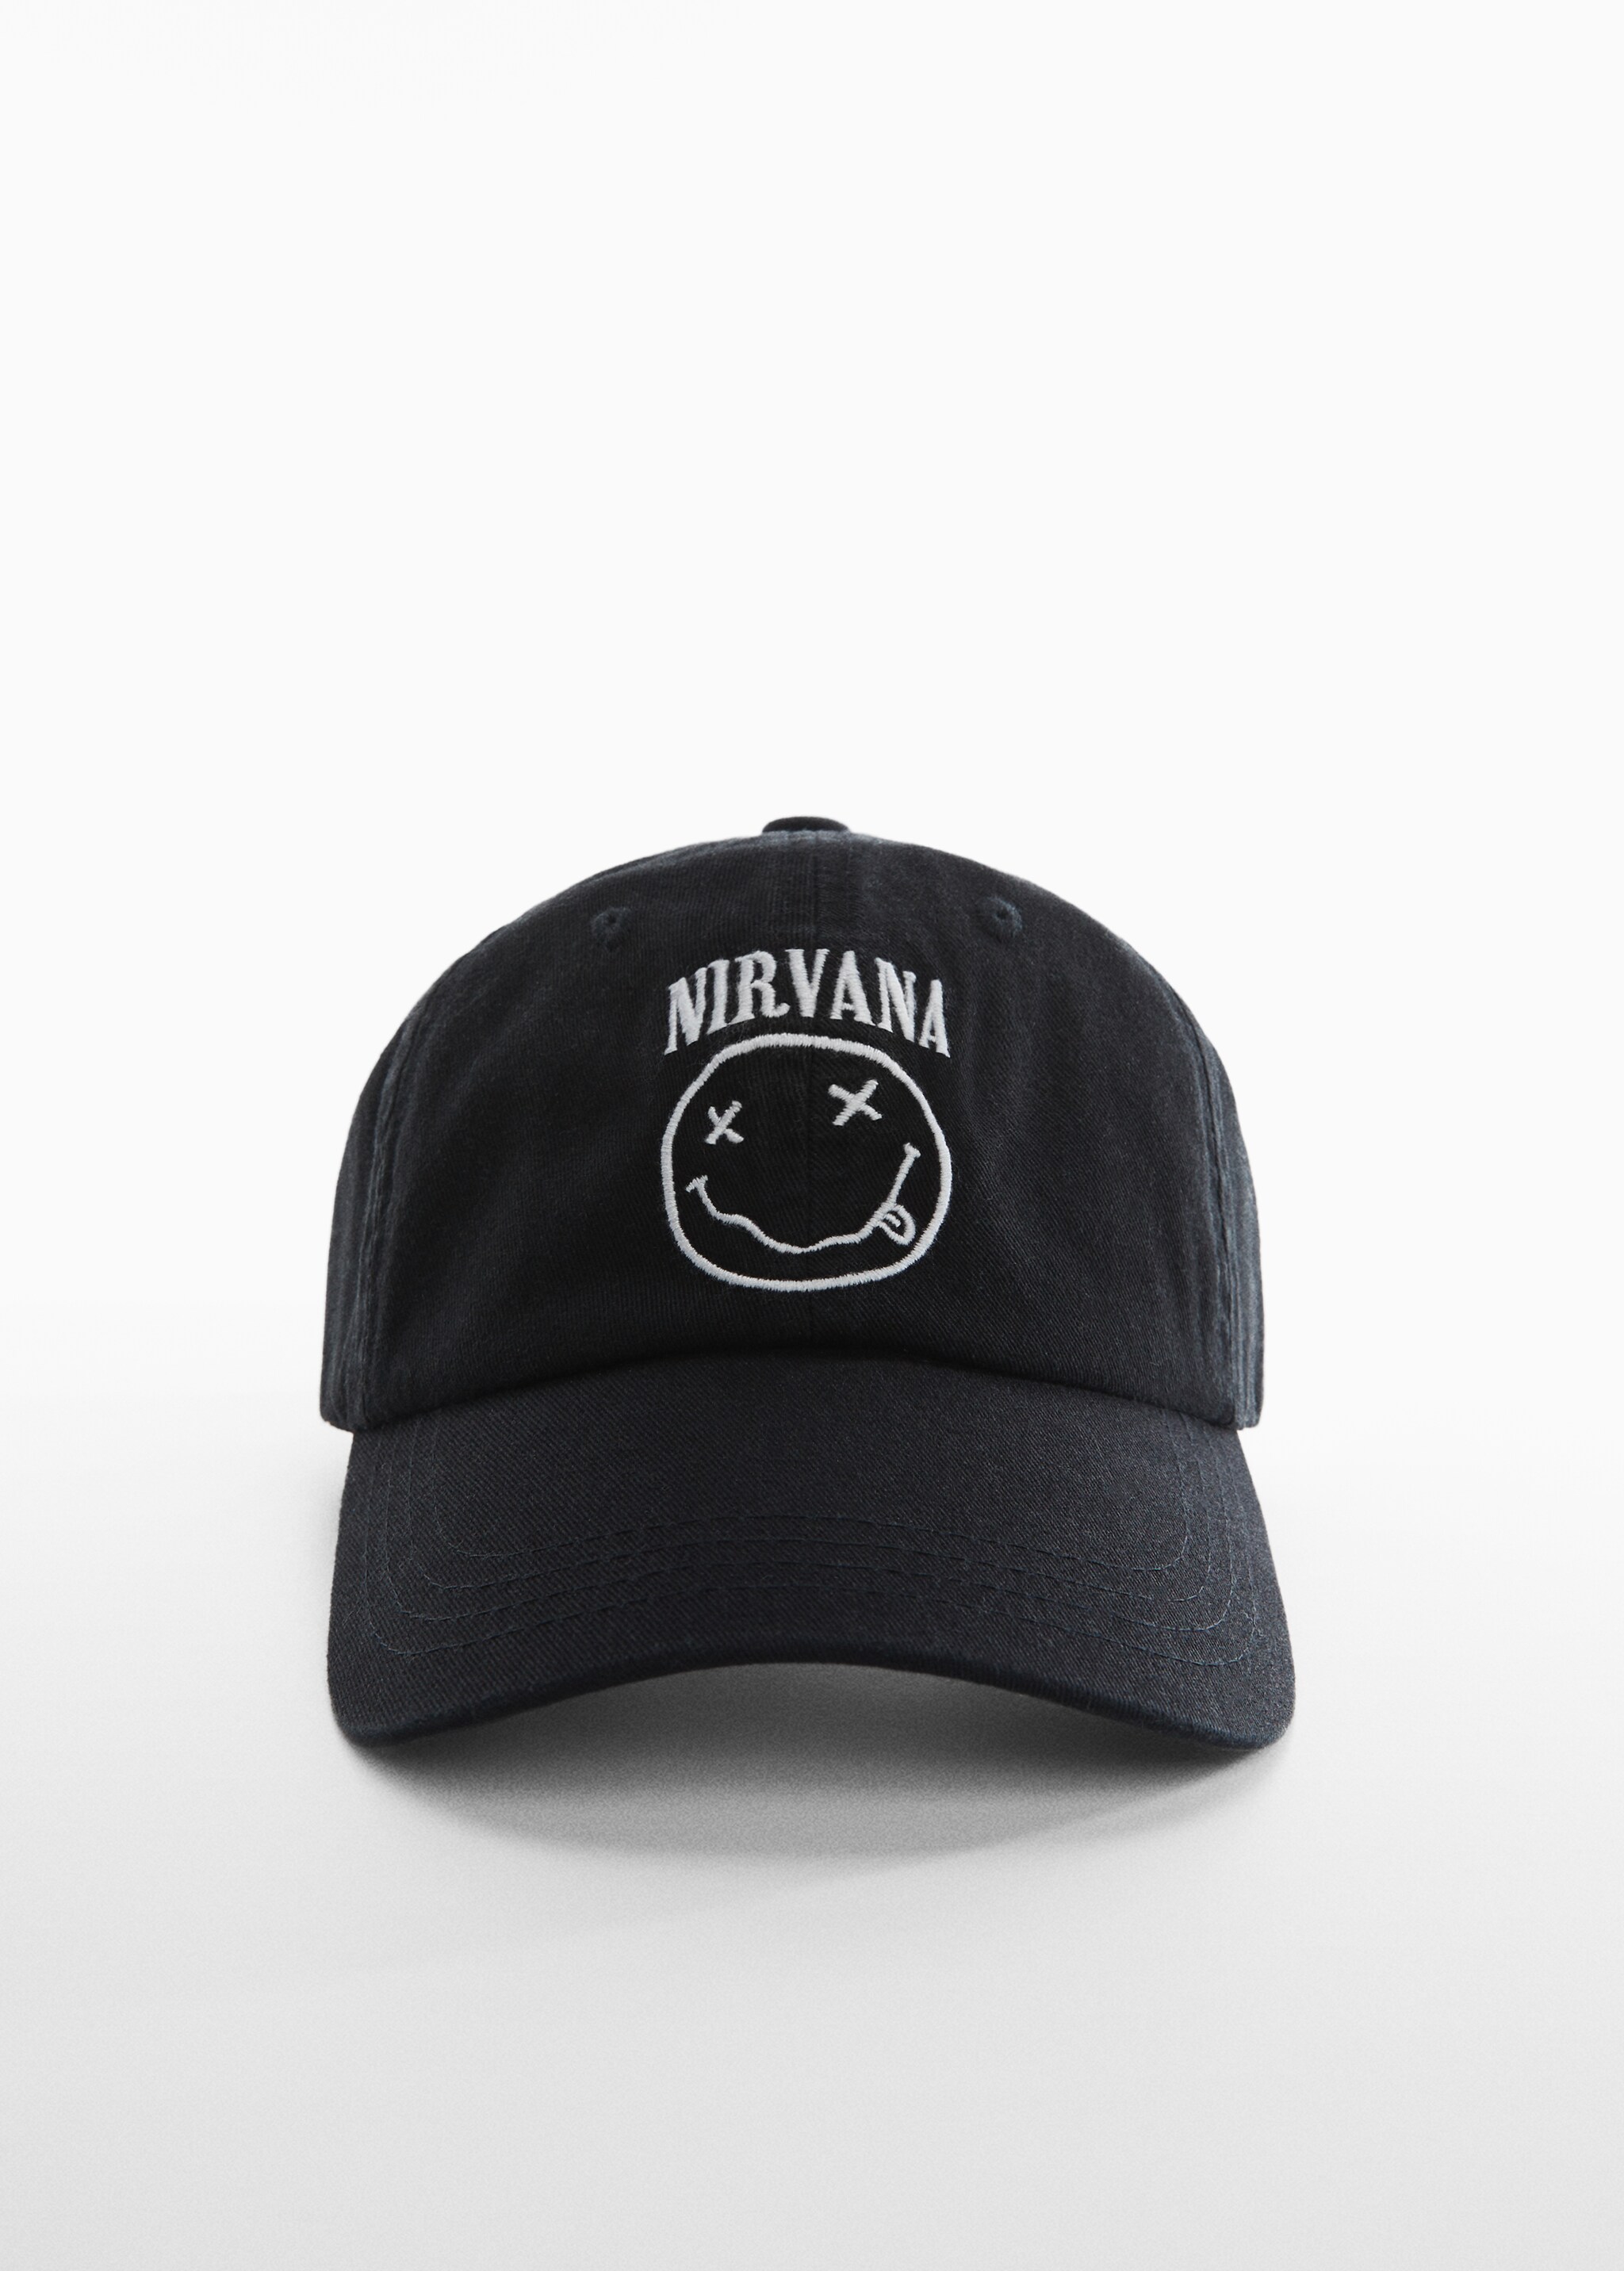 Nirvana design cap - Medium plane